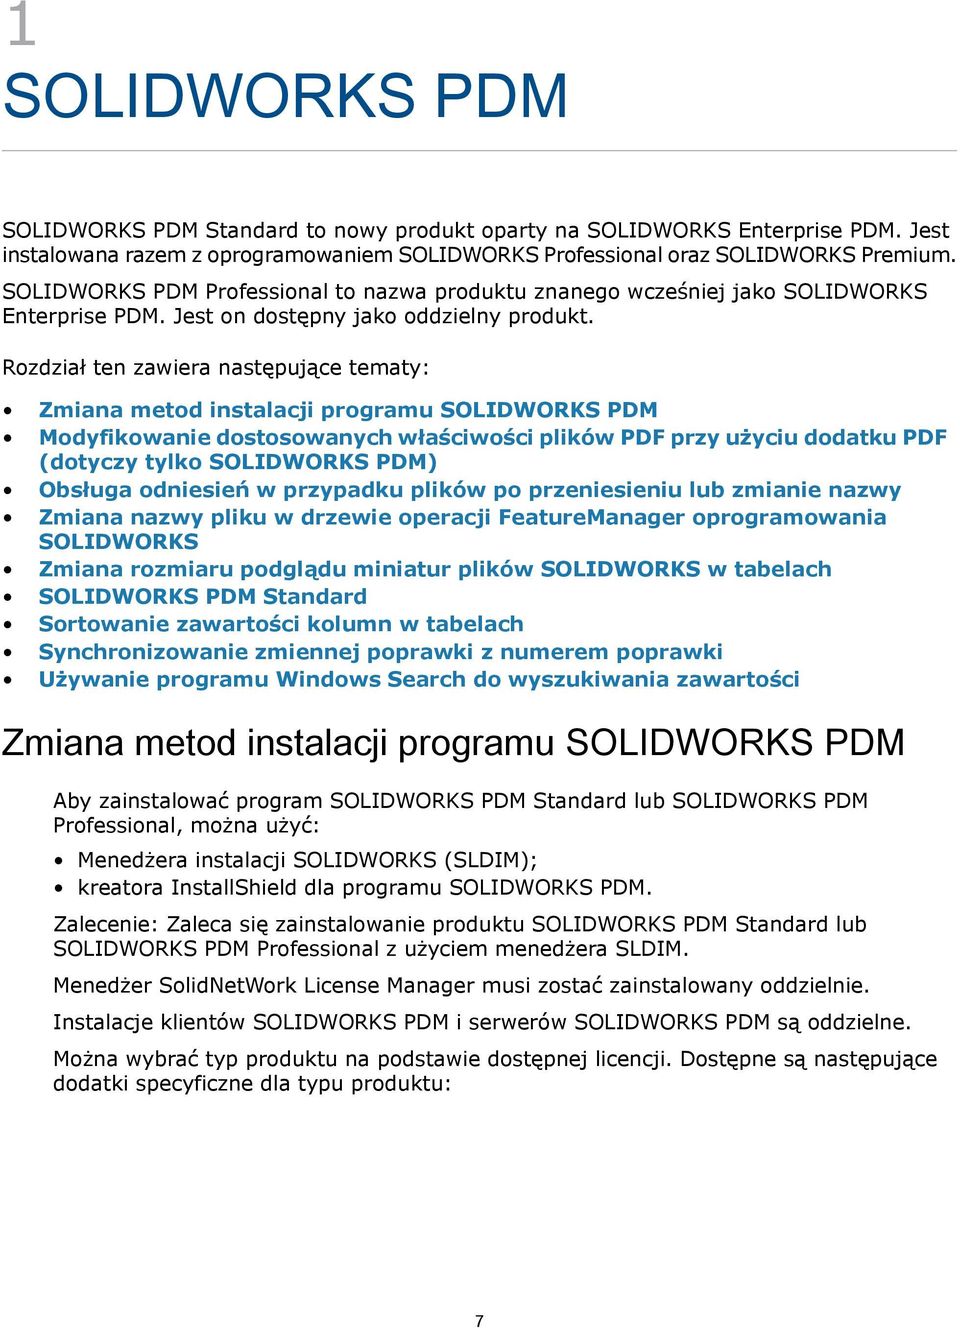 Rozdział ten zawiera następujące tematy: Zmiana metod instalacji programu SOLIDWORKS PDM Modyfikowanie dostosowanych właściwości plików PDF przy użyciu dodatku PDF (dotyczy tylko SOLIDWORKS PDM)